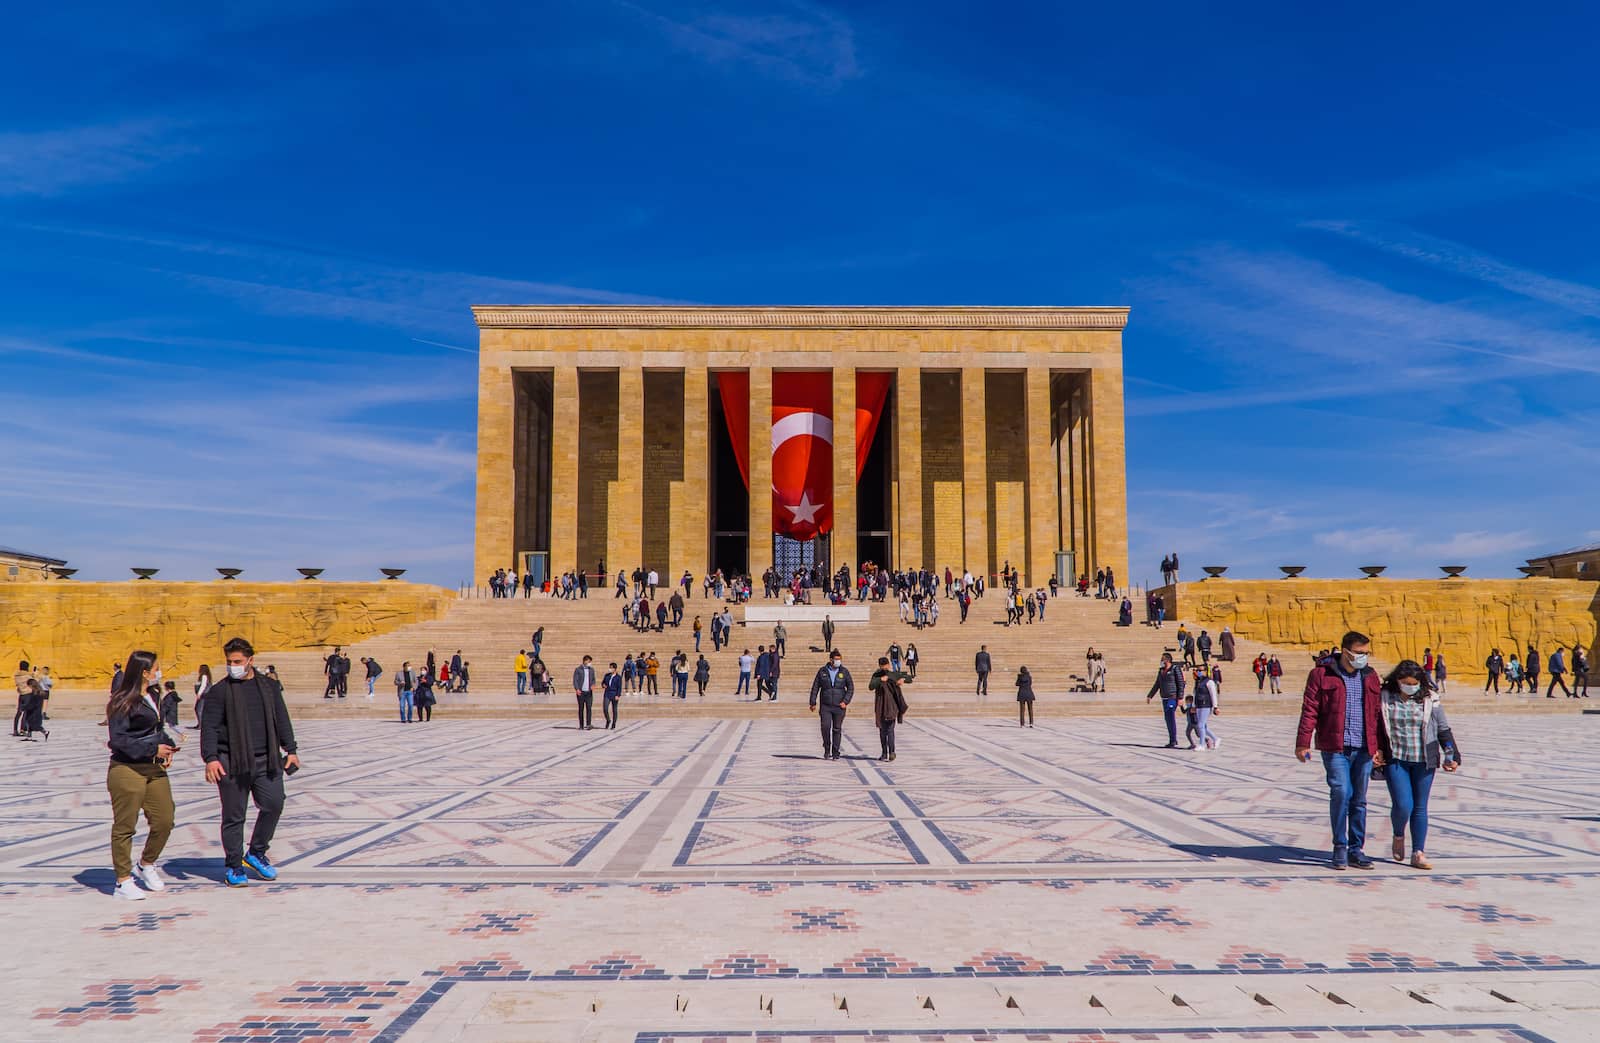 Ataturk's mausoleum